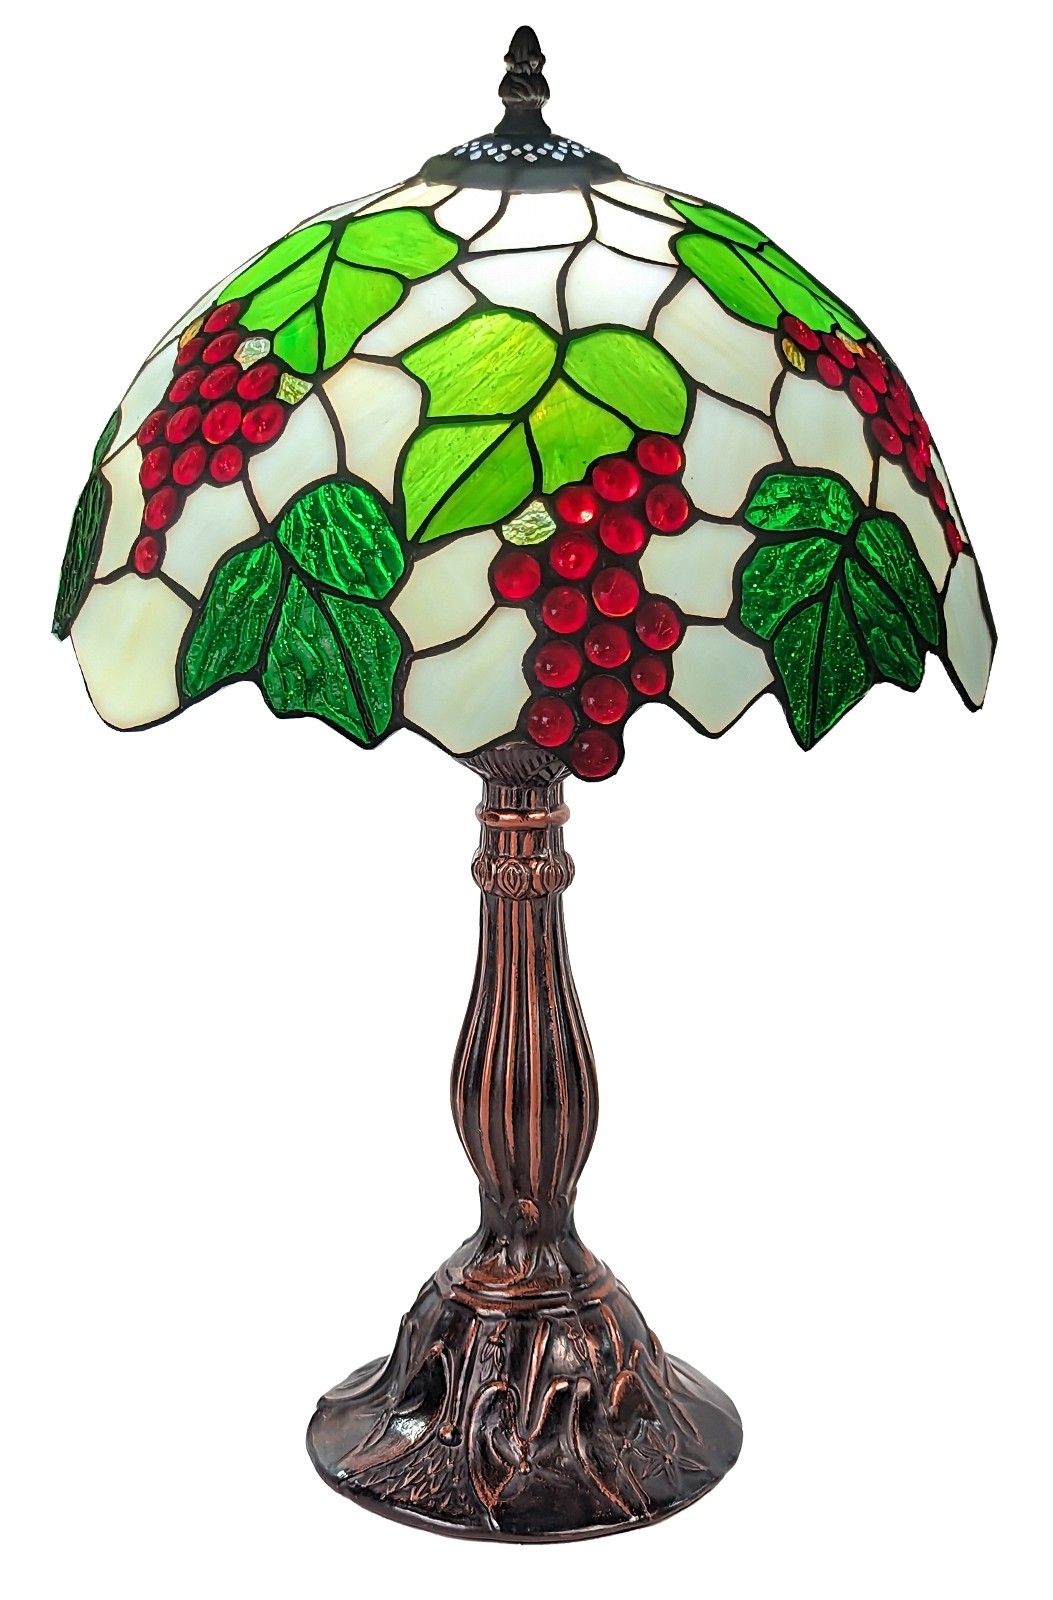 Grape Tiffany Table Lamp (Medium) 46cm